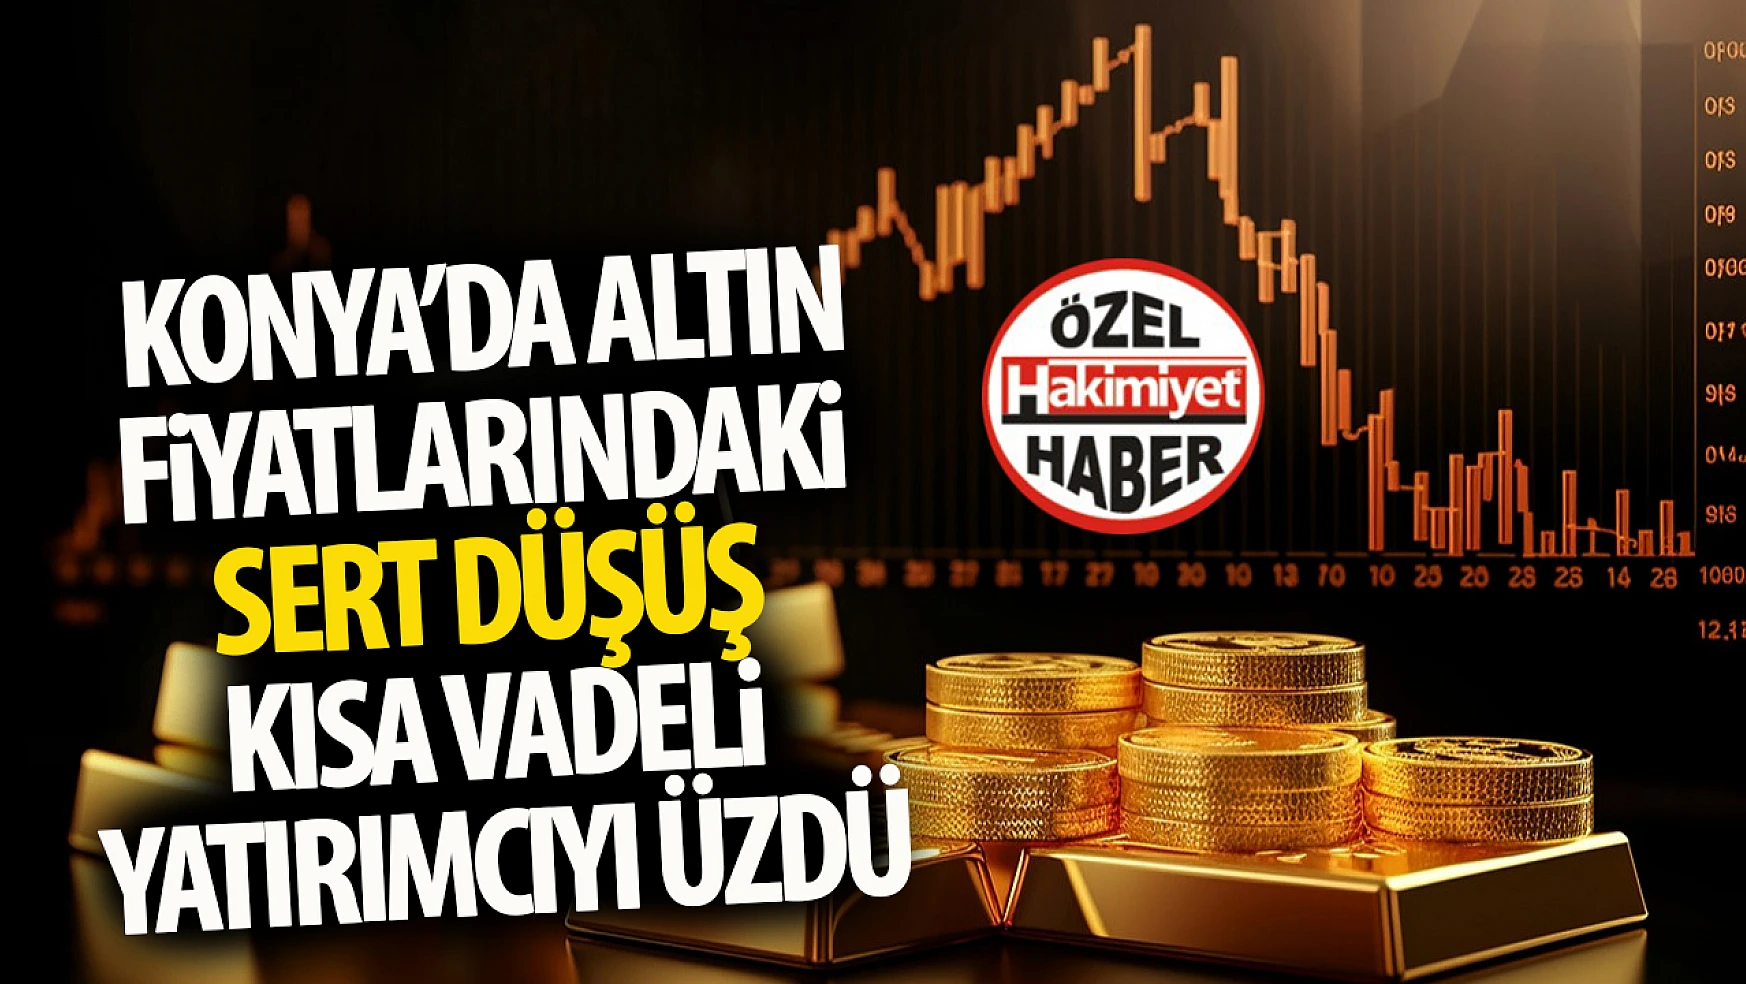 Konya'da Altın Fiyatlarında Sert Düşüş: Yatırımcılar Endişeli